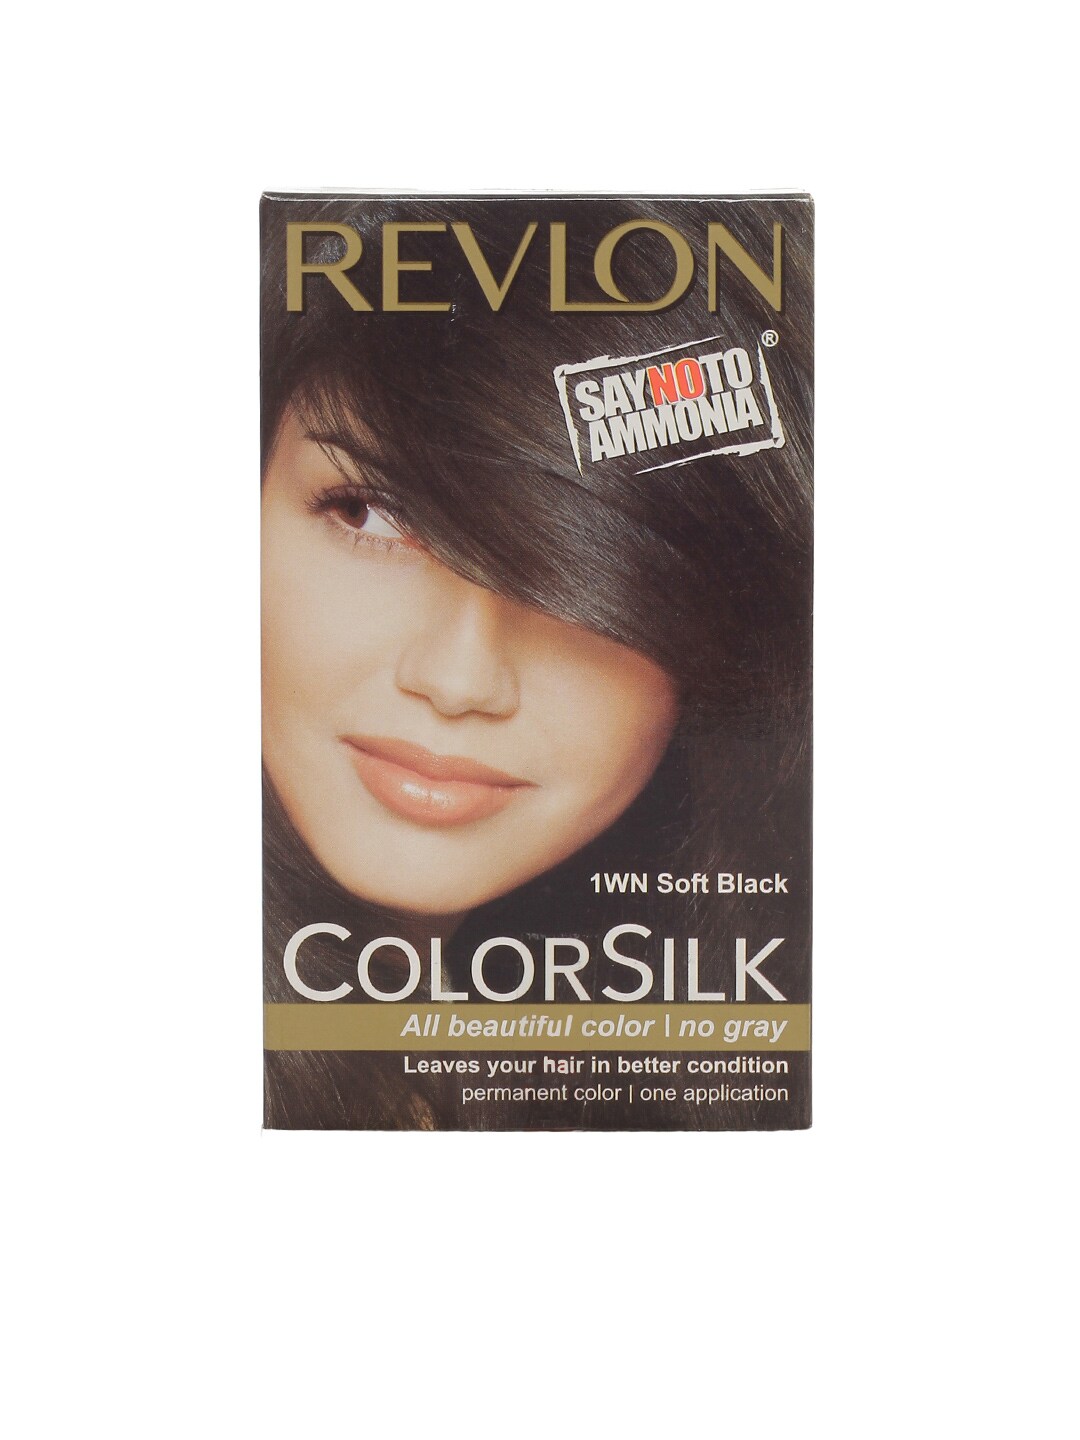 Revlon Colorsilk 1WN Soft Black Hair Colour